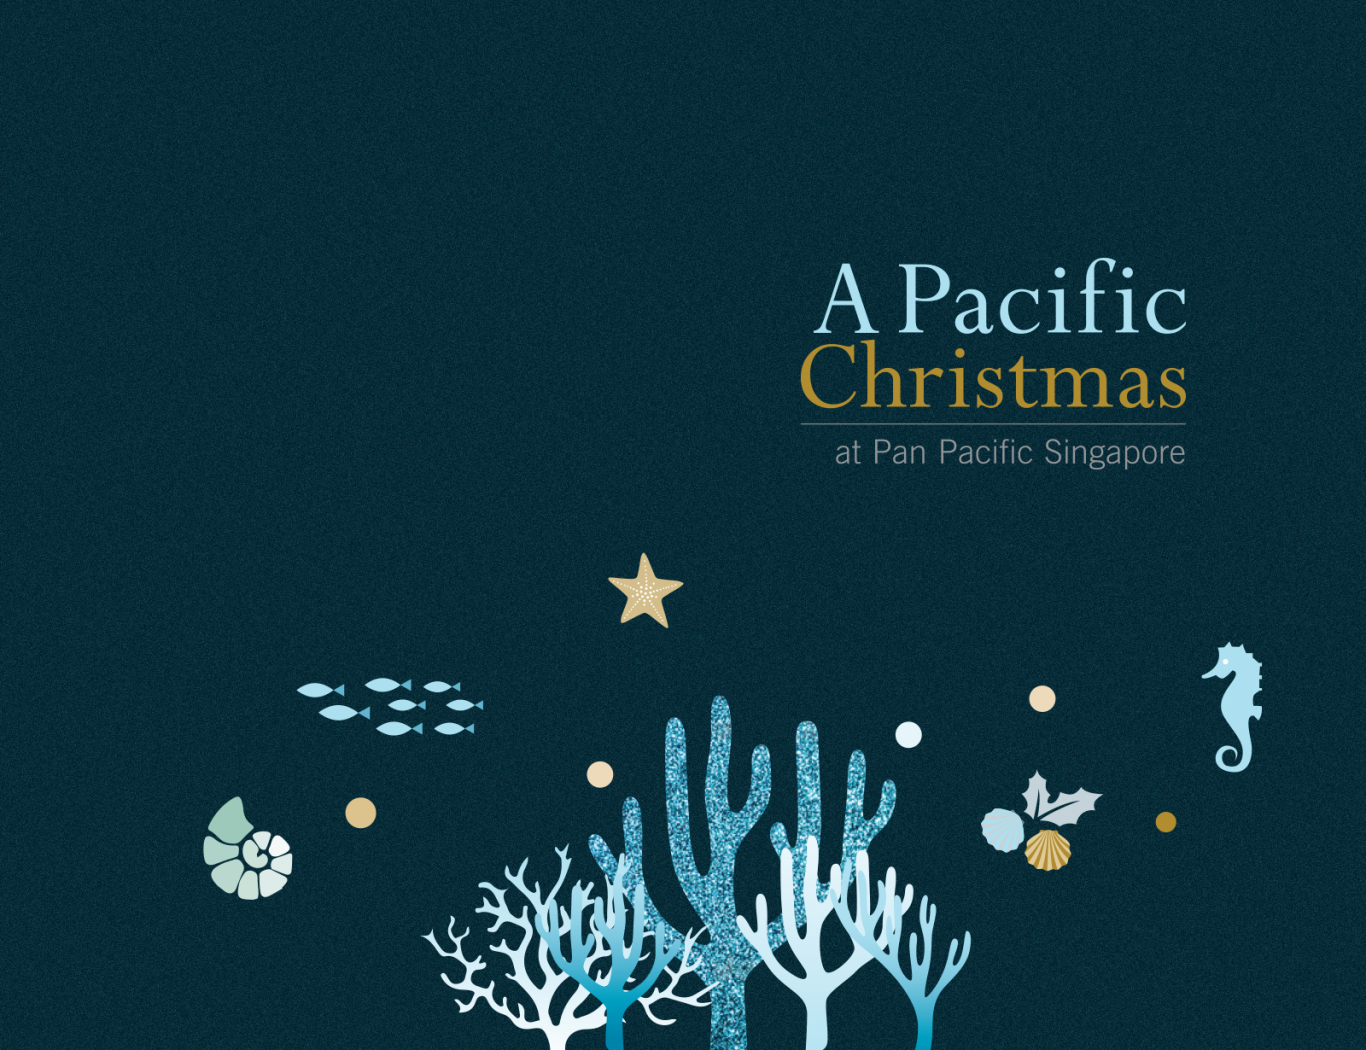 新加坡泛亞太平洋酒店聖誕節禮盒圖0